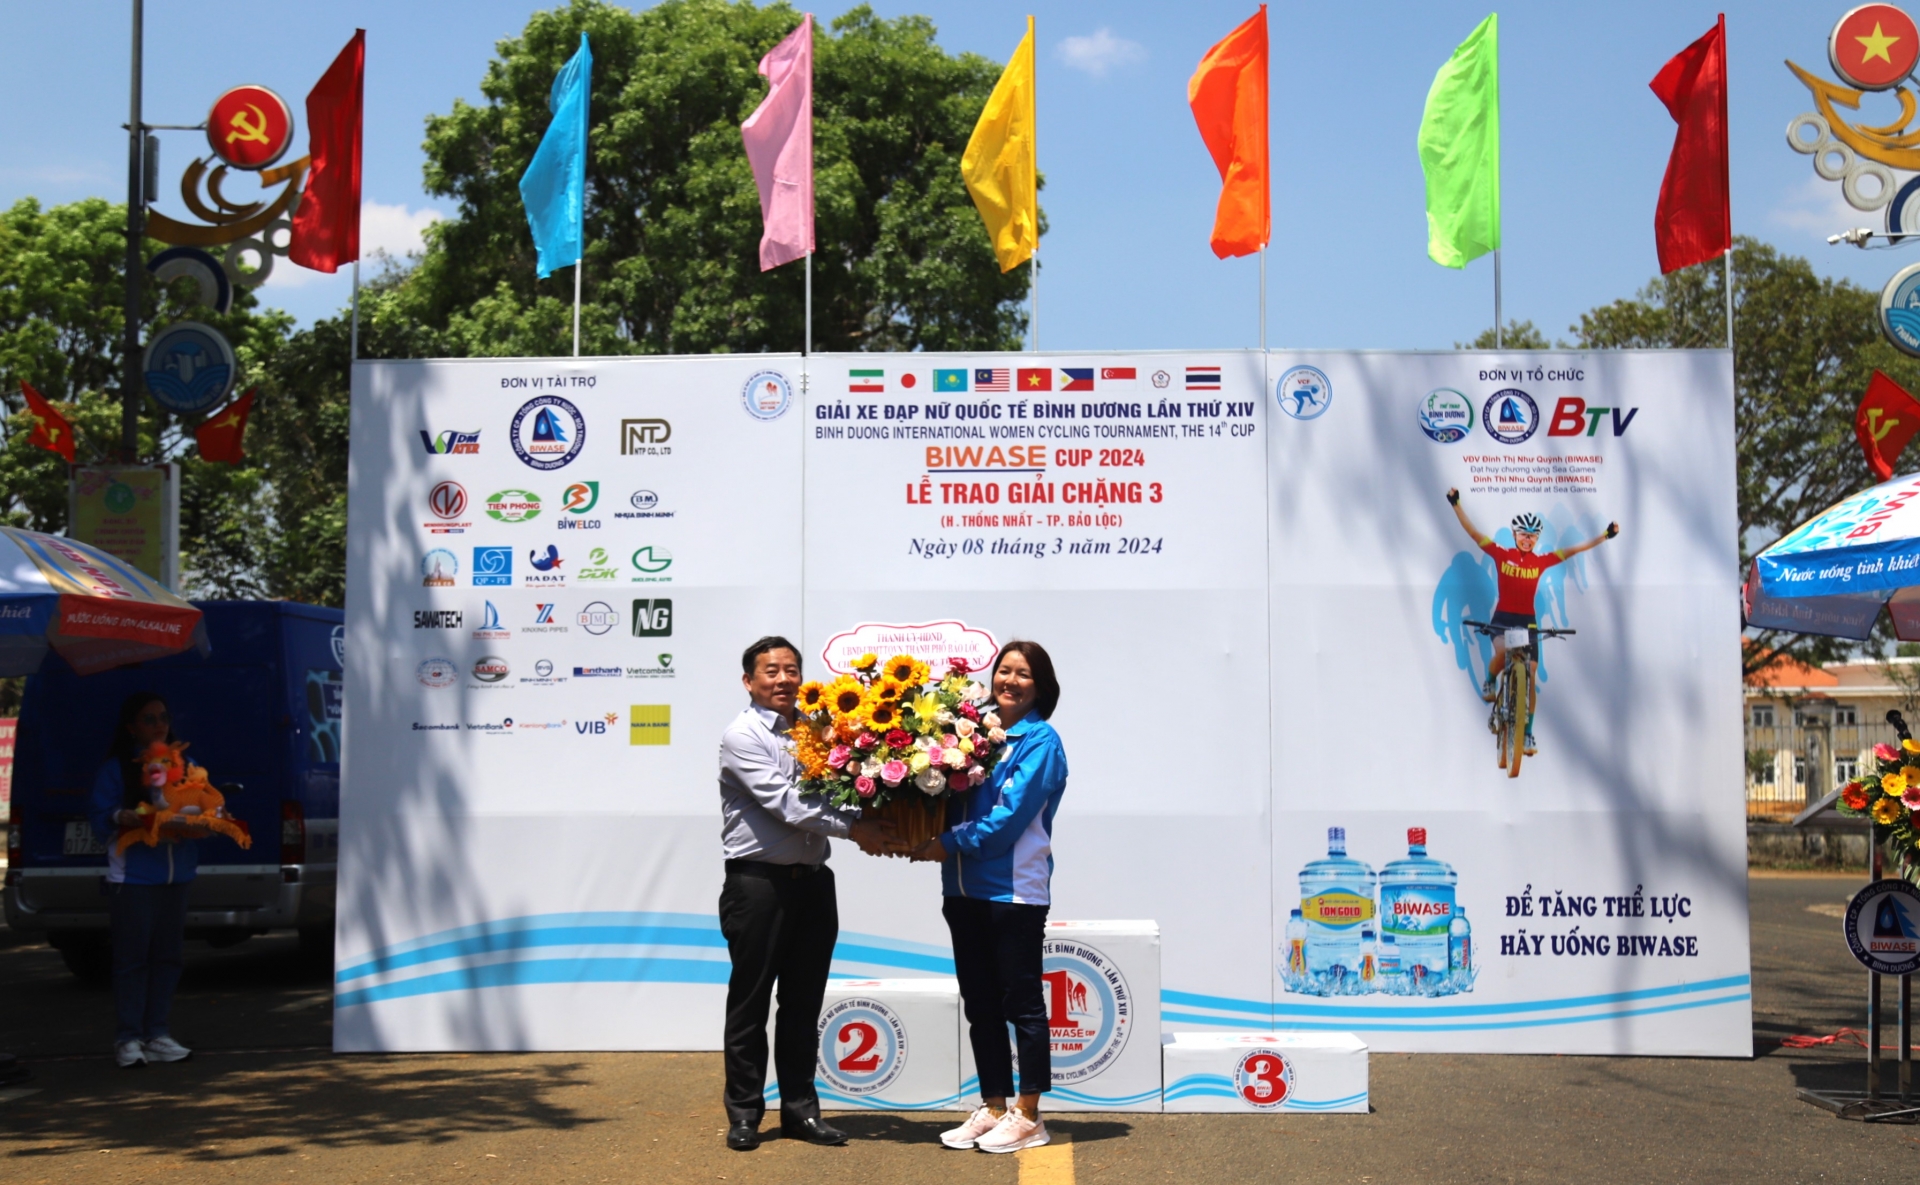 Ông Nguyễn Văn Phương - Chủ tịch UBND TP Bảo Lộc tặng hoa chúc mừng Ban tổ chức Giải đua